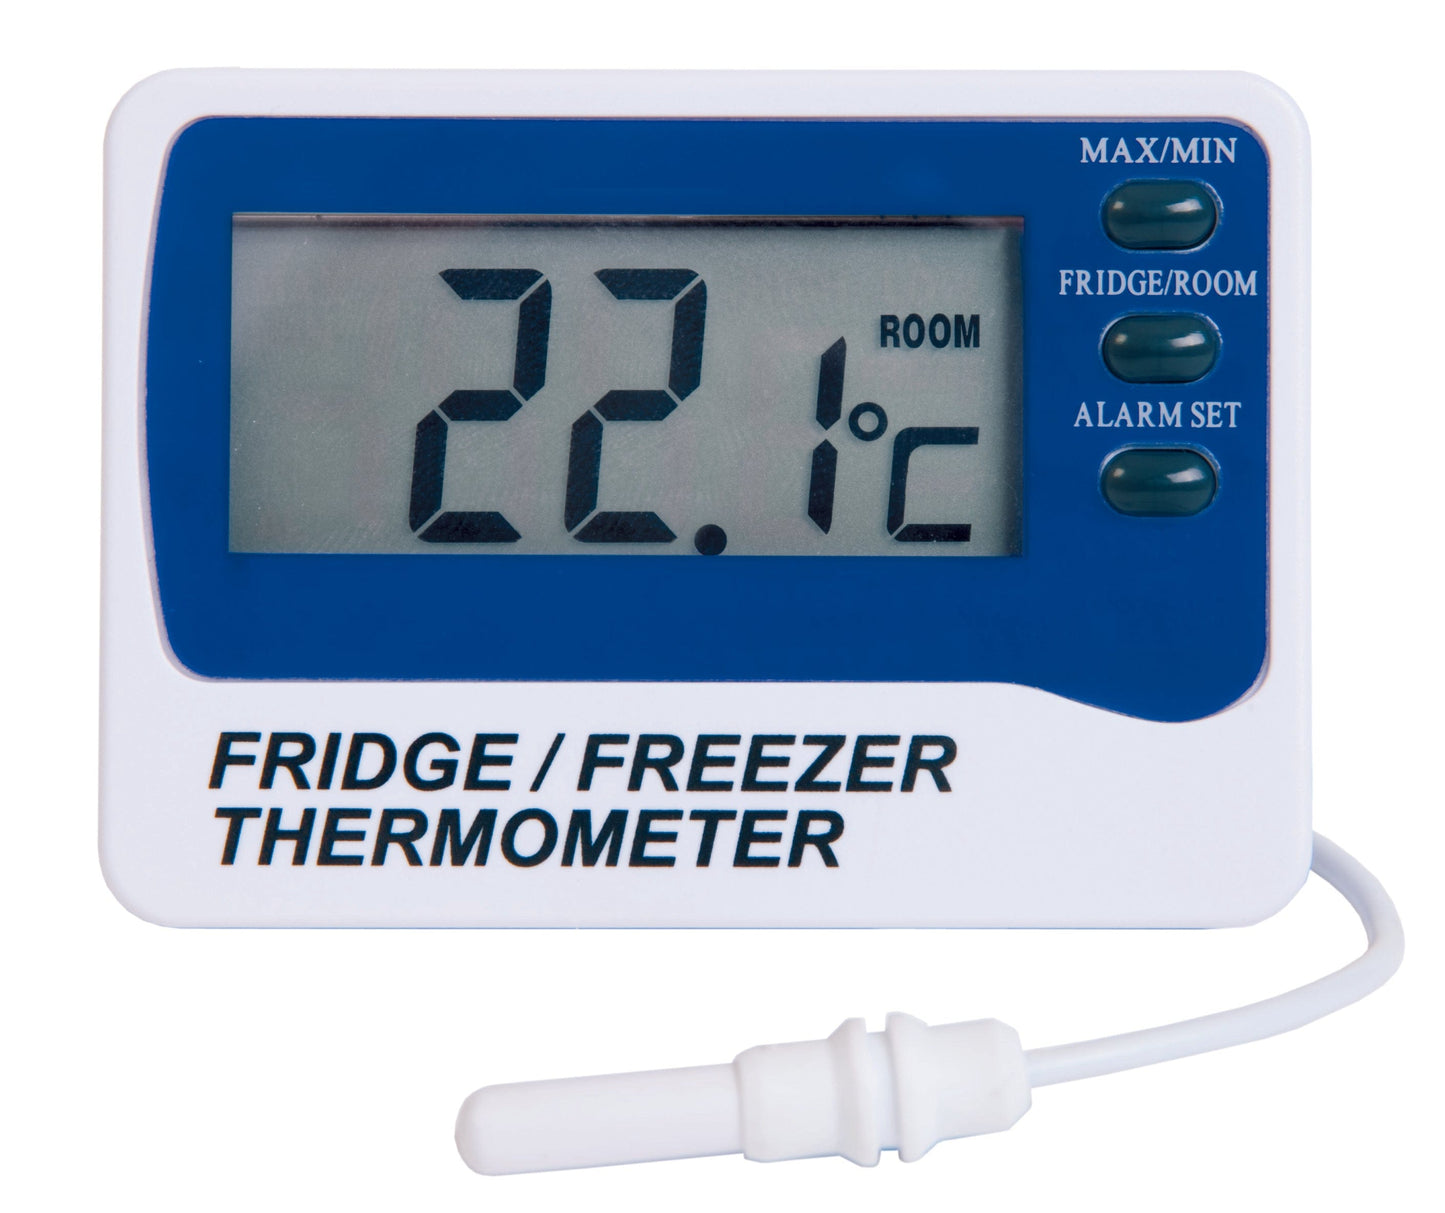 Voici le texte réécrit en utilisant les données du produit :

Un thermomètre alarme pour réfrigérateur / congélateur de Thermometer.fr affiche une température ambiante de 22,1°C, doté de boutons pour max/min, réfrigérateur/pièce et réglage d'alarme sonore.